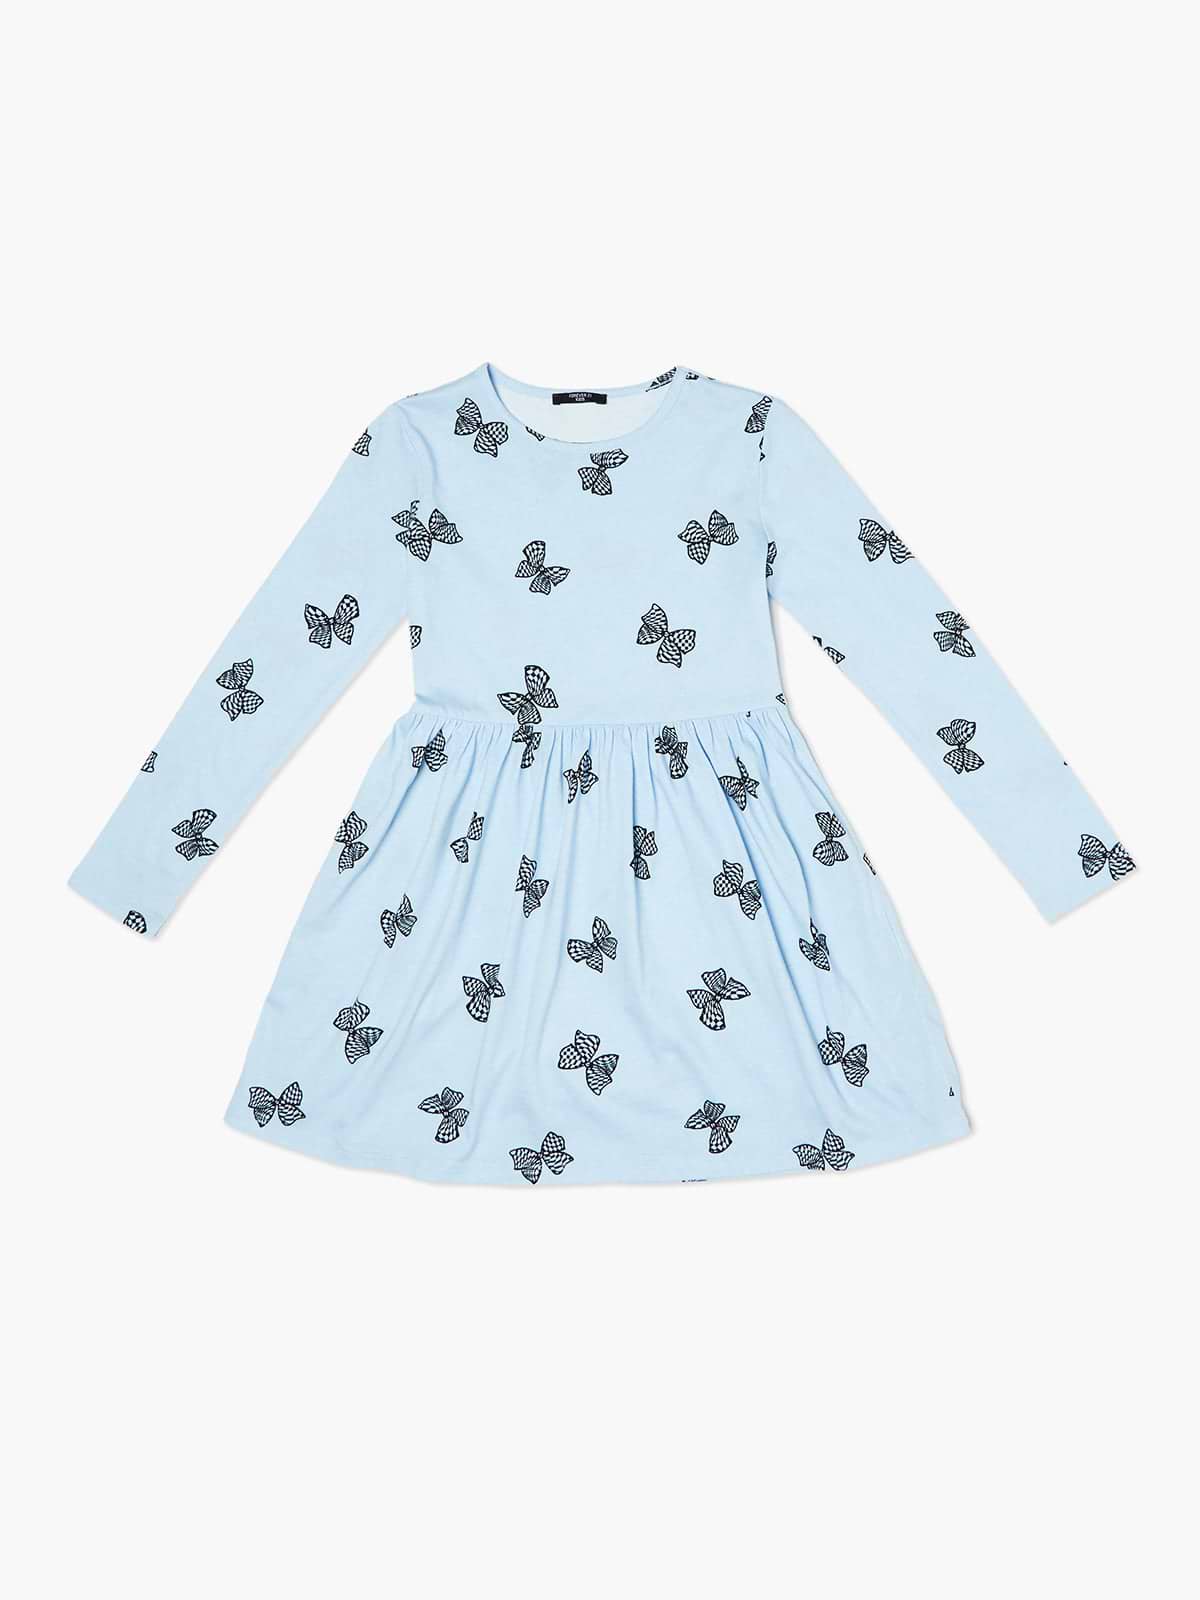 שמלת מקסי עם הדפס פרפרים / ילדות